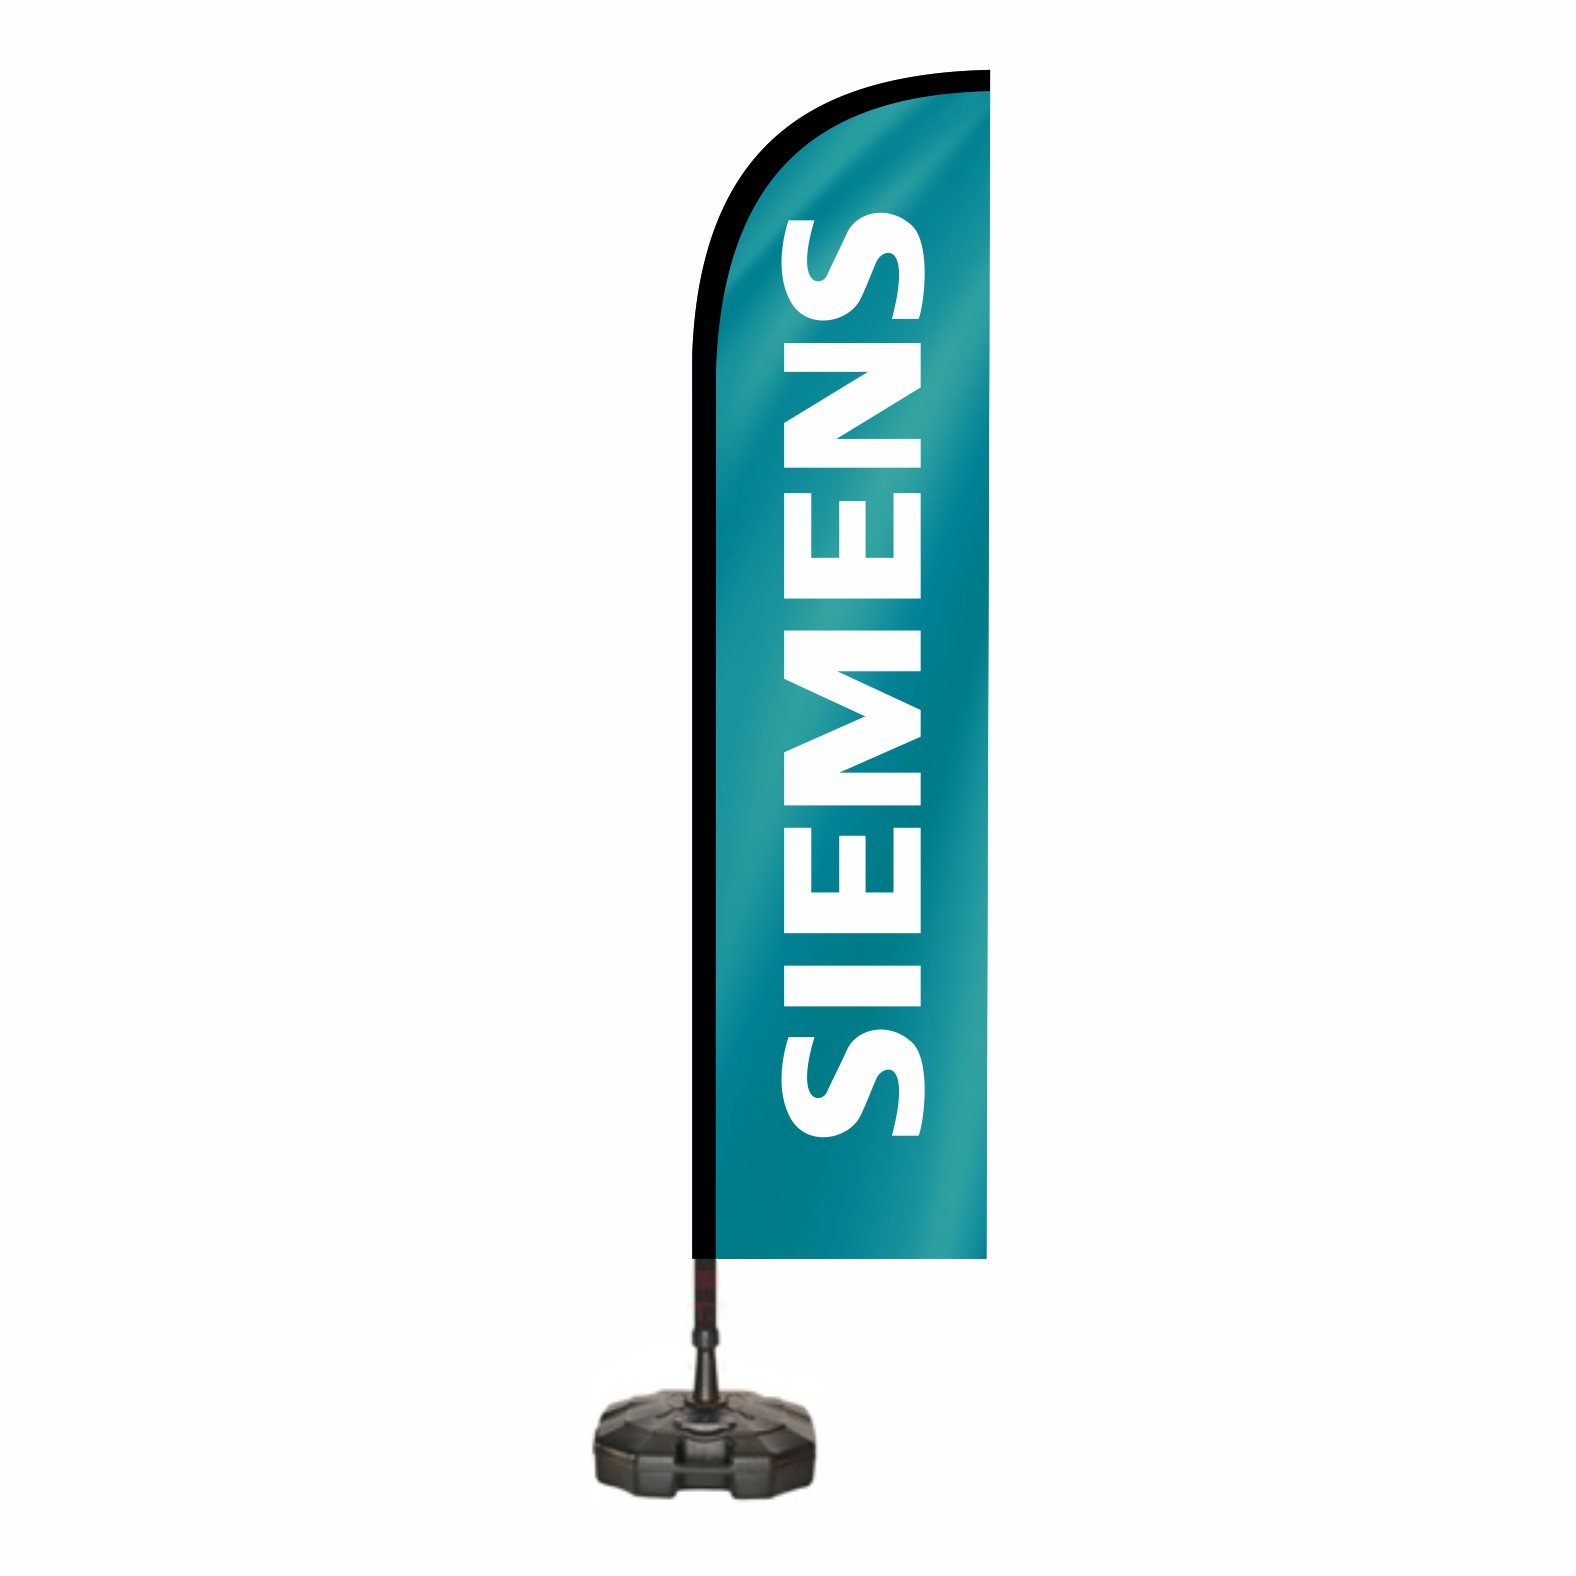 Siemens Yelken Bayraklar Ne Demek